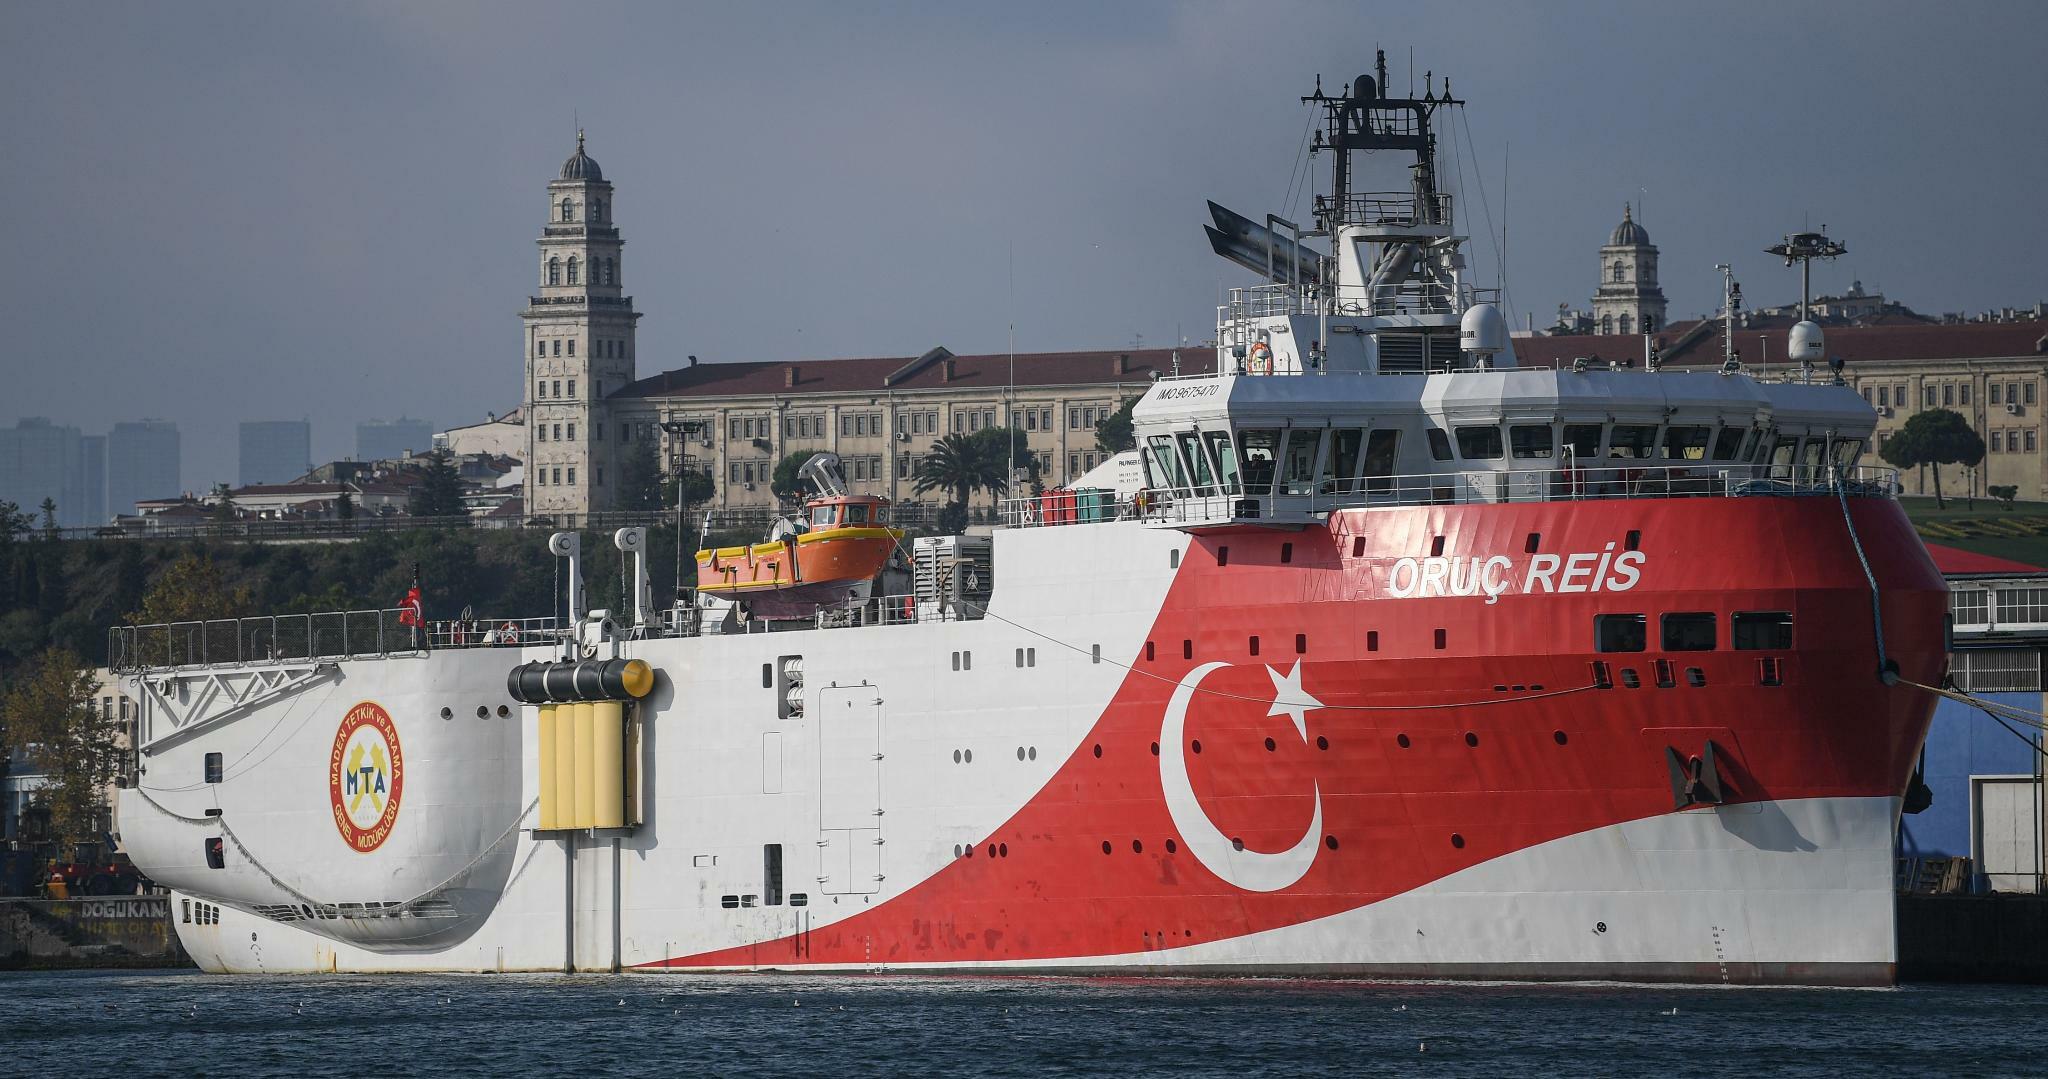 Tàu nghiên cứu Oruc Reis của Thổ Nhĩ Kỳ neo tại cảng Haydarpasa.